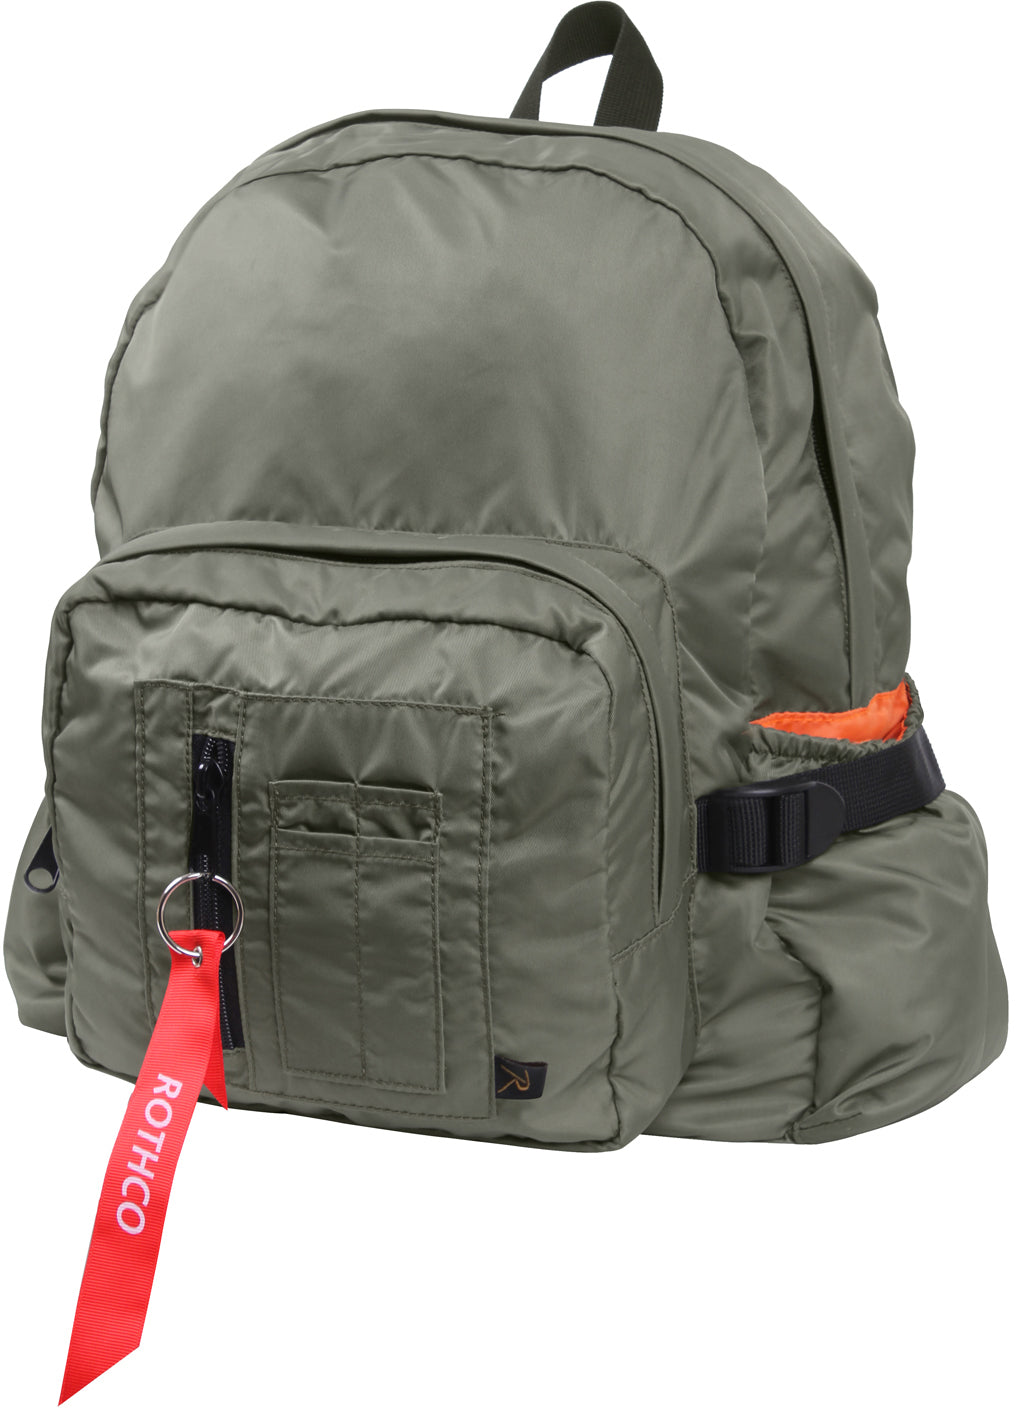 Sage Green - MA-1 Bomber Jacket Mini Backpack with Orange Lining